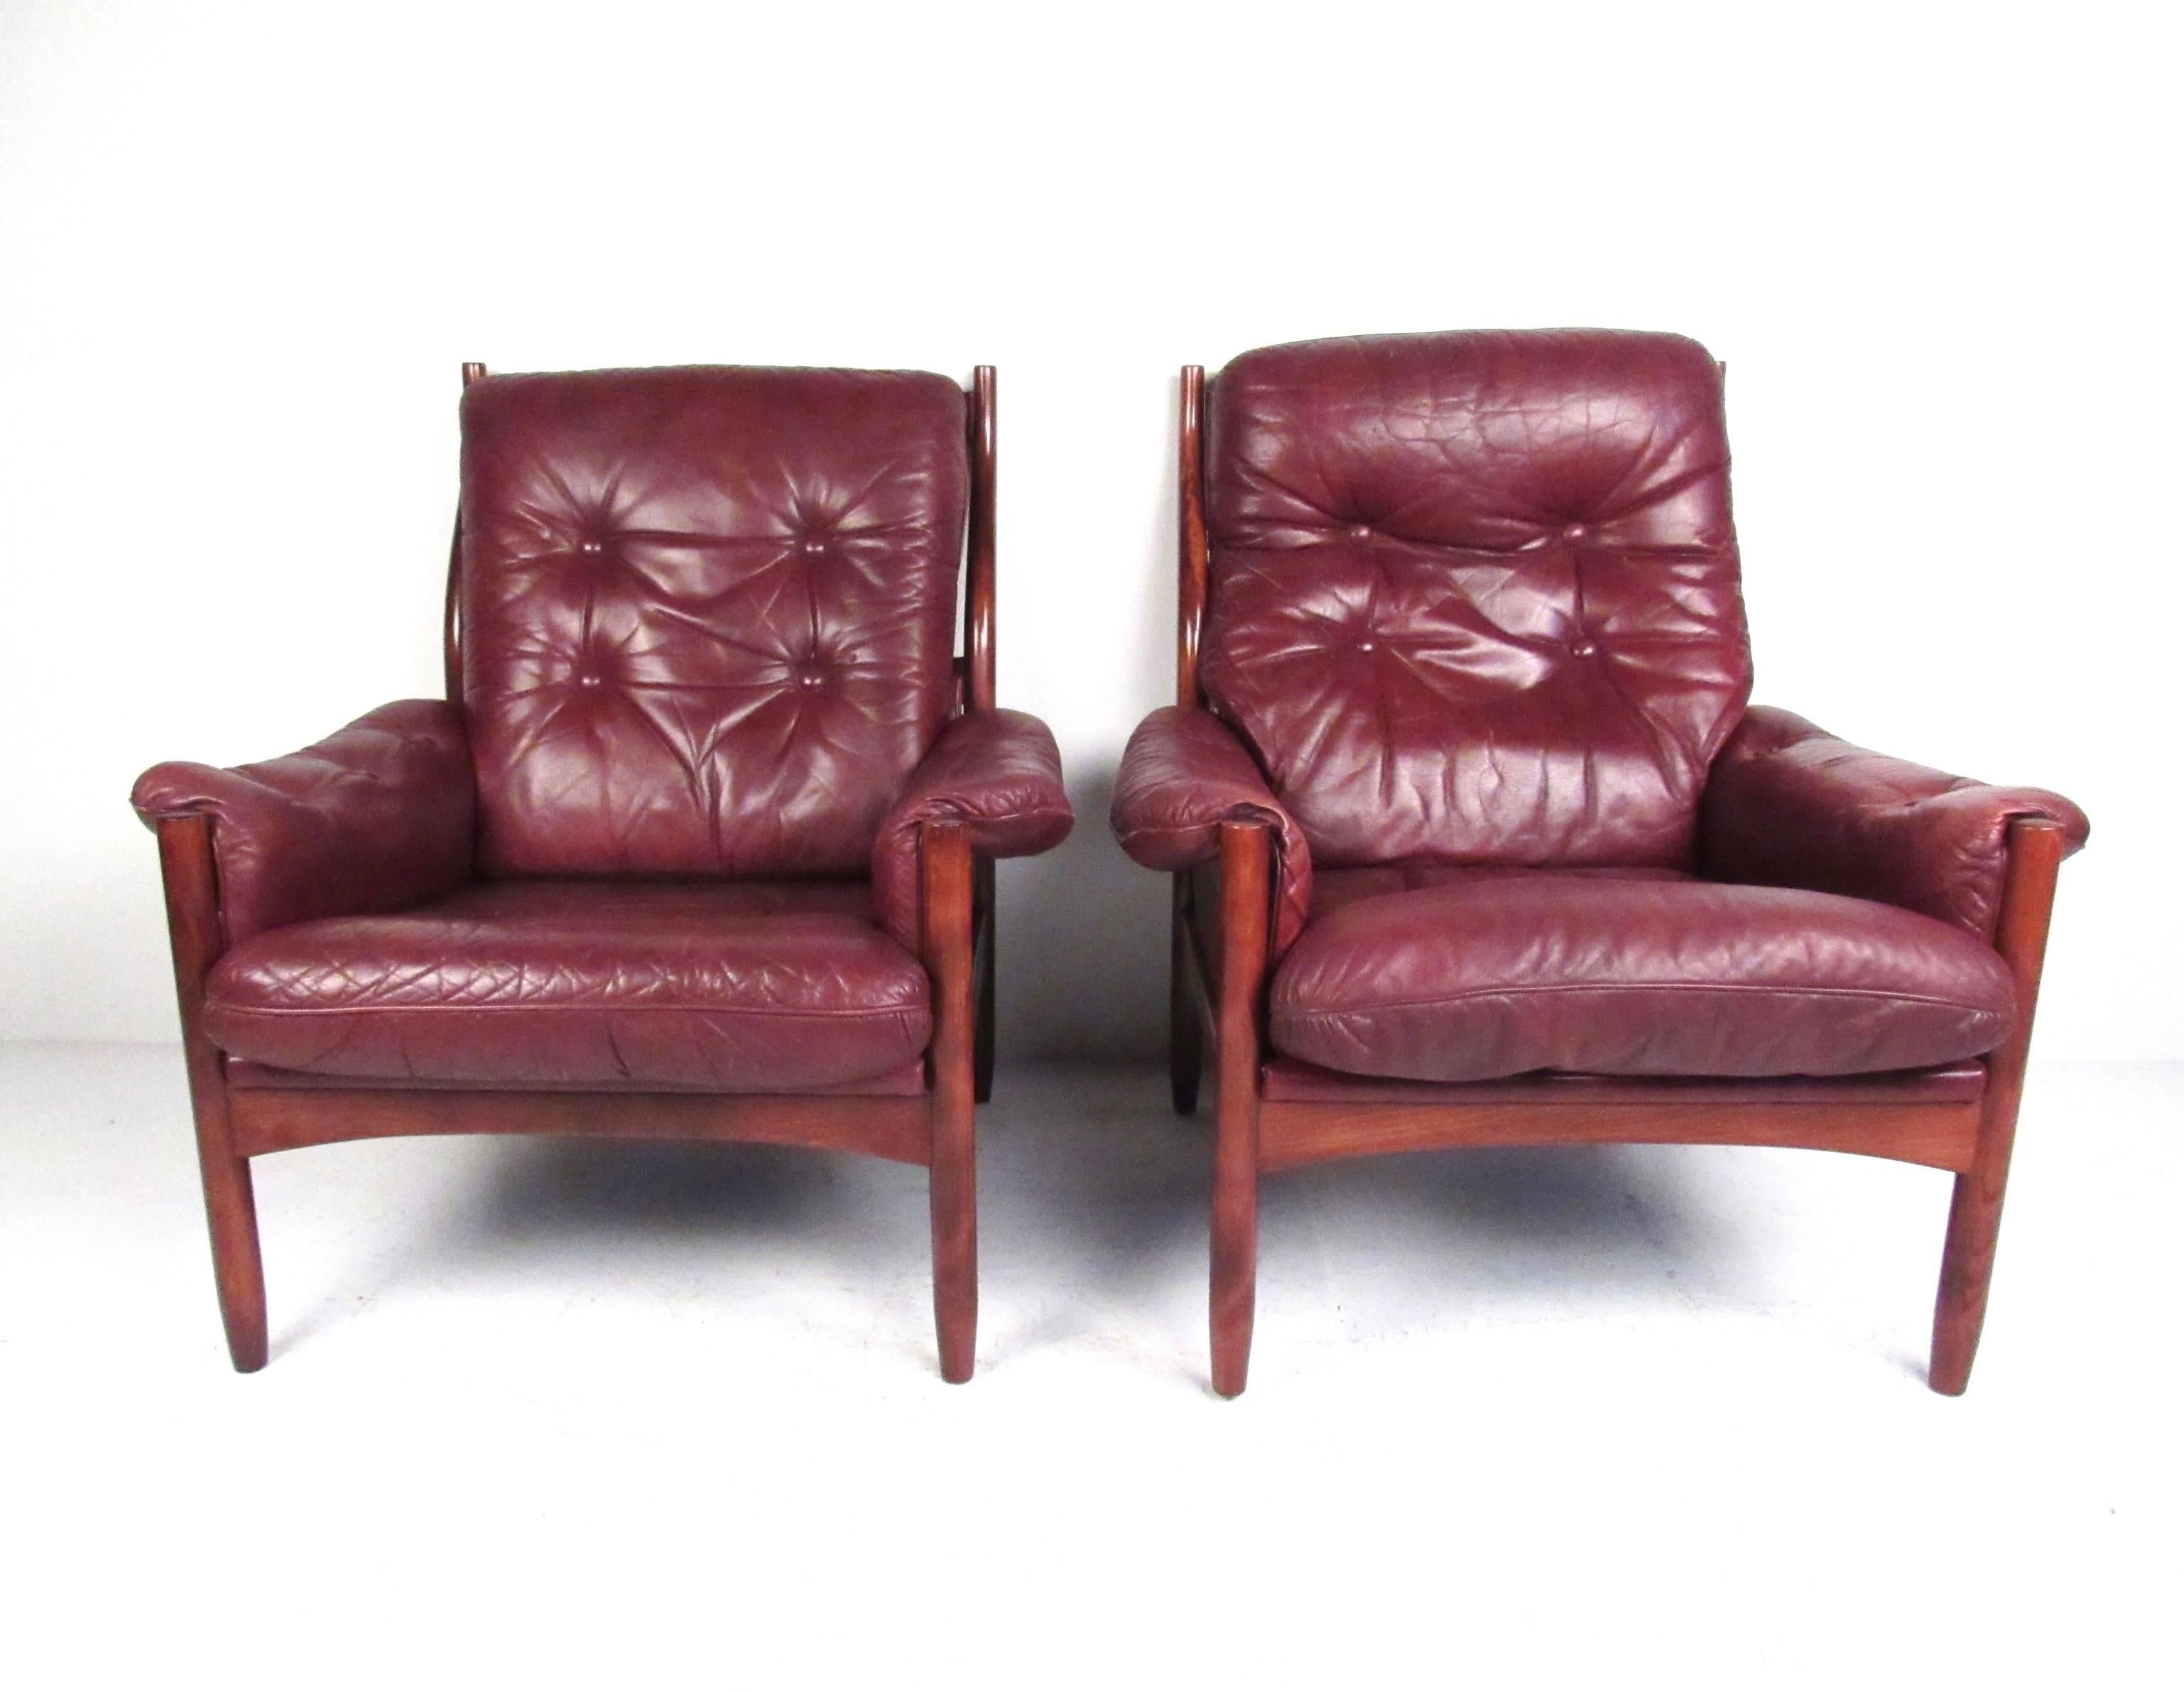 Dieses schöne Paar skandinavisch-moderner Loungesessel zeichnet sich durch getuftetes Vintage-Leder, ein schlankes und elegantes Rosenholzgestell und einzigartiges dänisches Design aus. Die bequeme und stilvolle Kontur der Rückenlehne trägt zum